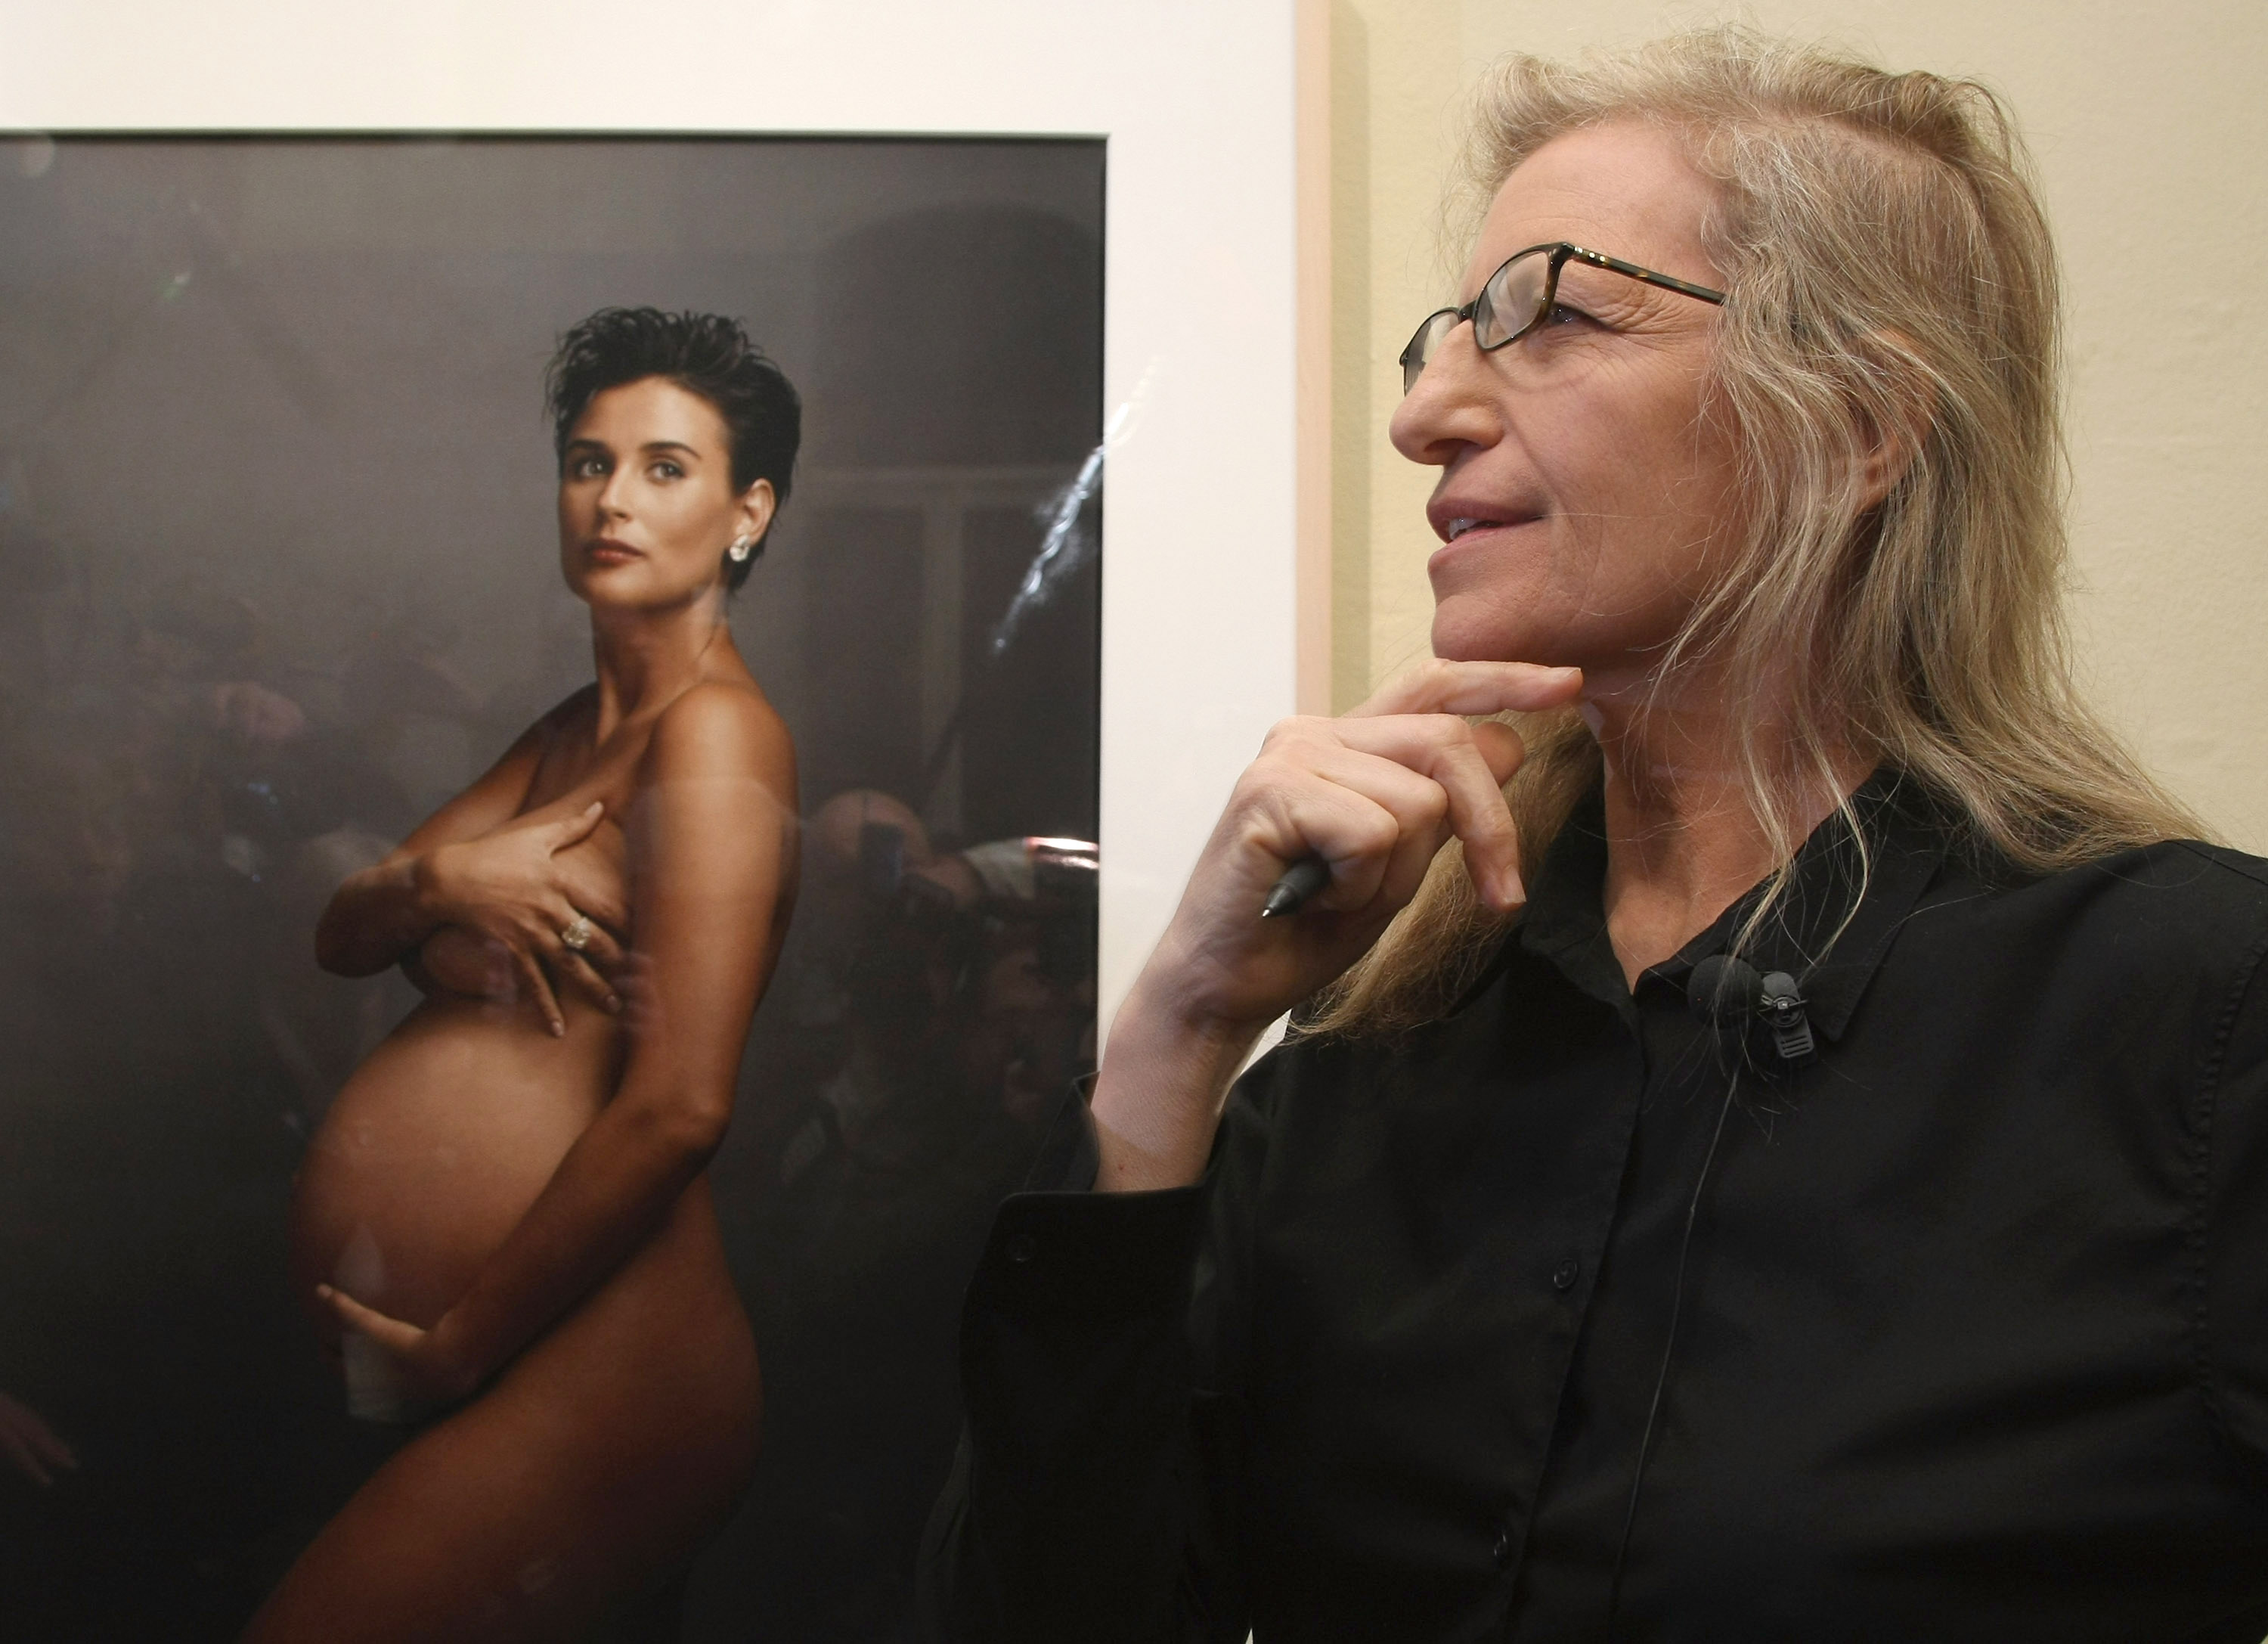 Annie Leibovitz steht vor einem Porträt der schwangeren Schauspielerin Demi Moore während eines Rundgangs durch die Ausstellung "Annie Leibovitz - A Photographer's Life 1990-2005" in der C/O Gallery am 20. Februar 2009 in Berlin, Deutschland. | Quelle: Getty Images